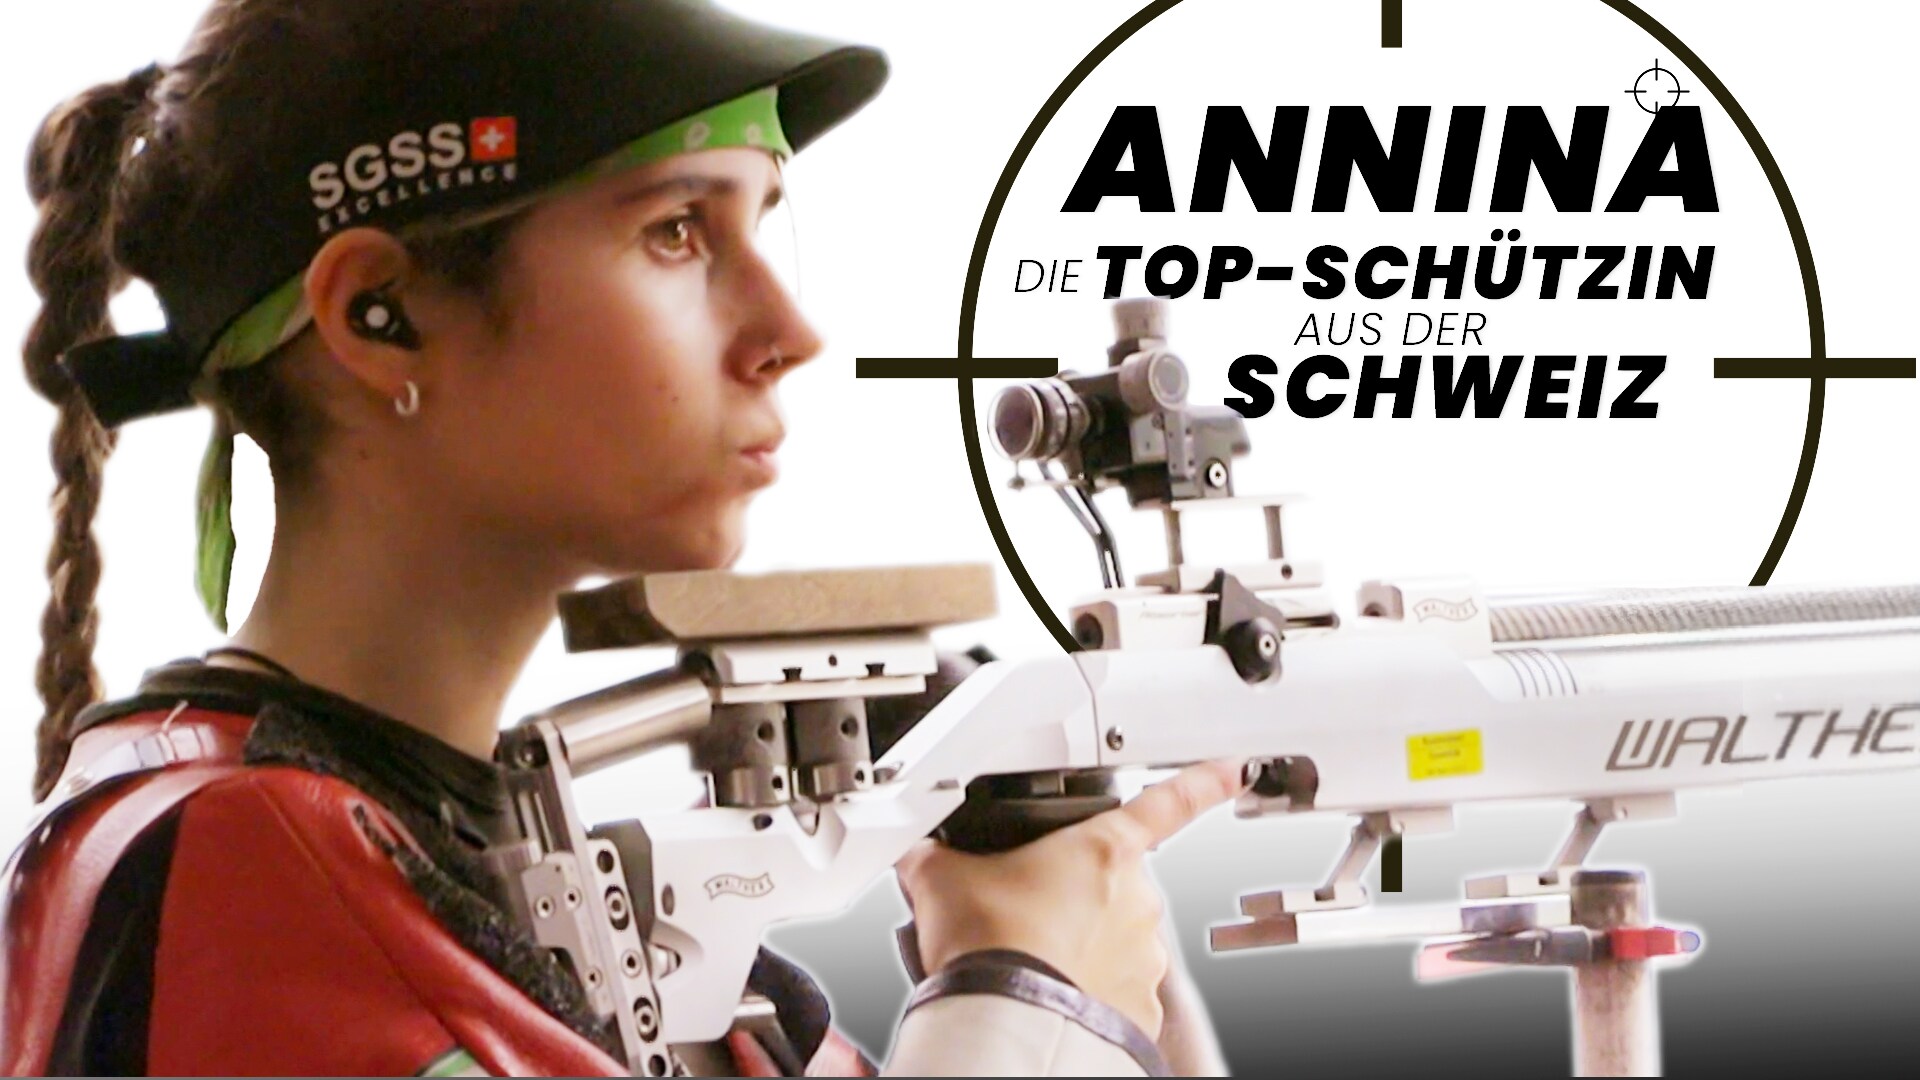 Annina - Die Top-Schützin aus der Schweiz